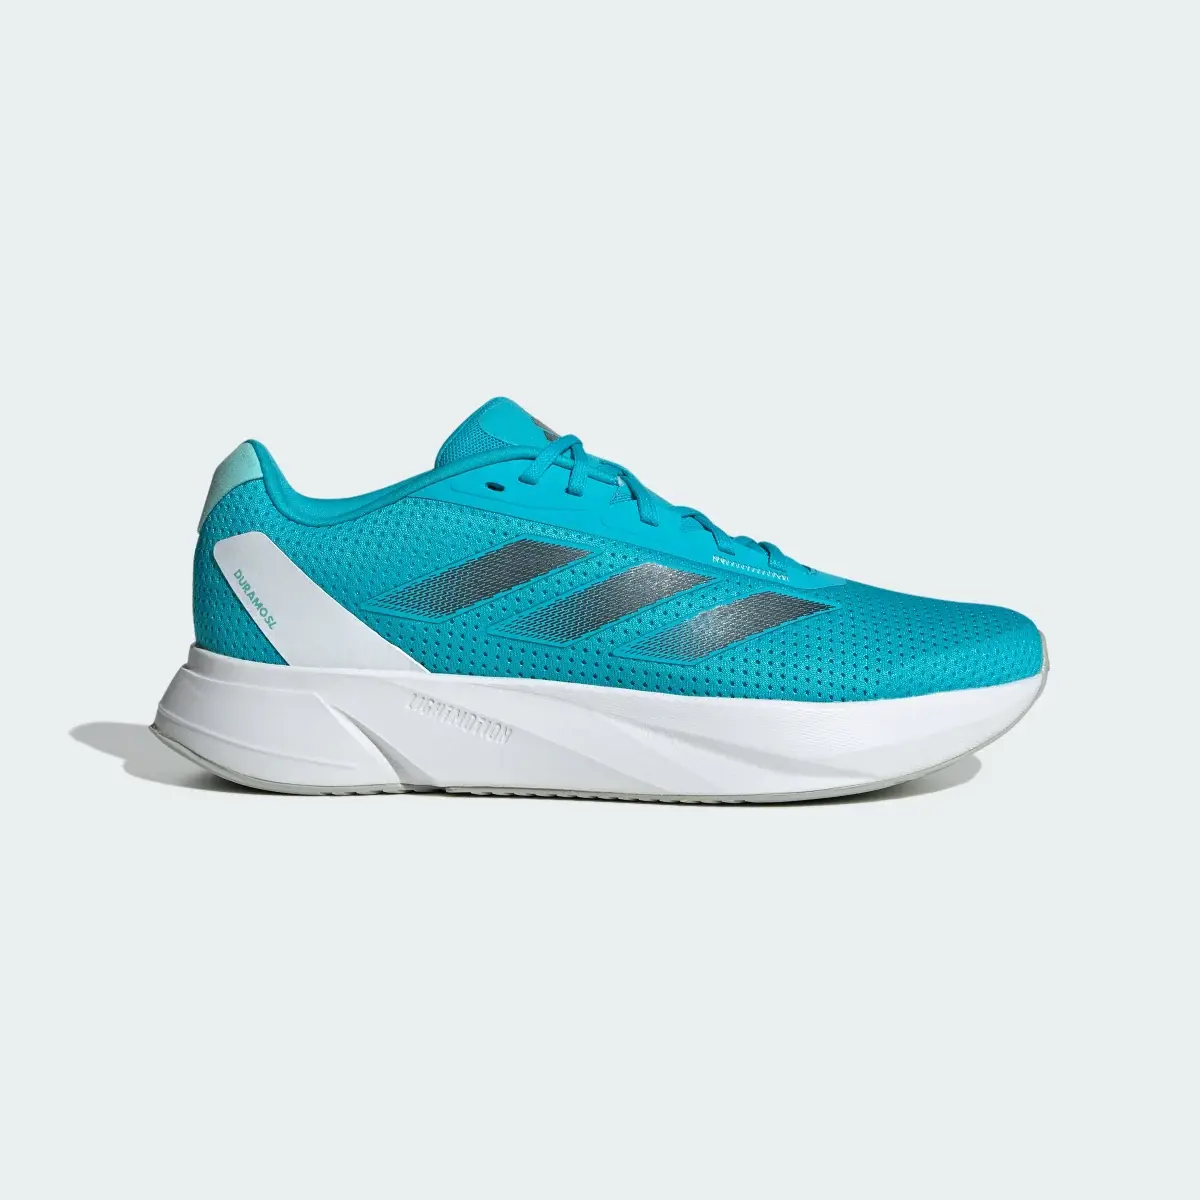 Adidas Duramo SL Running Shoes. 2